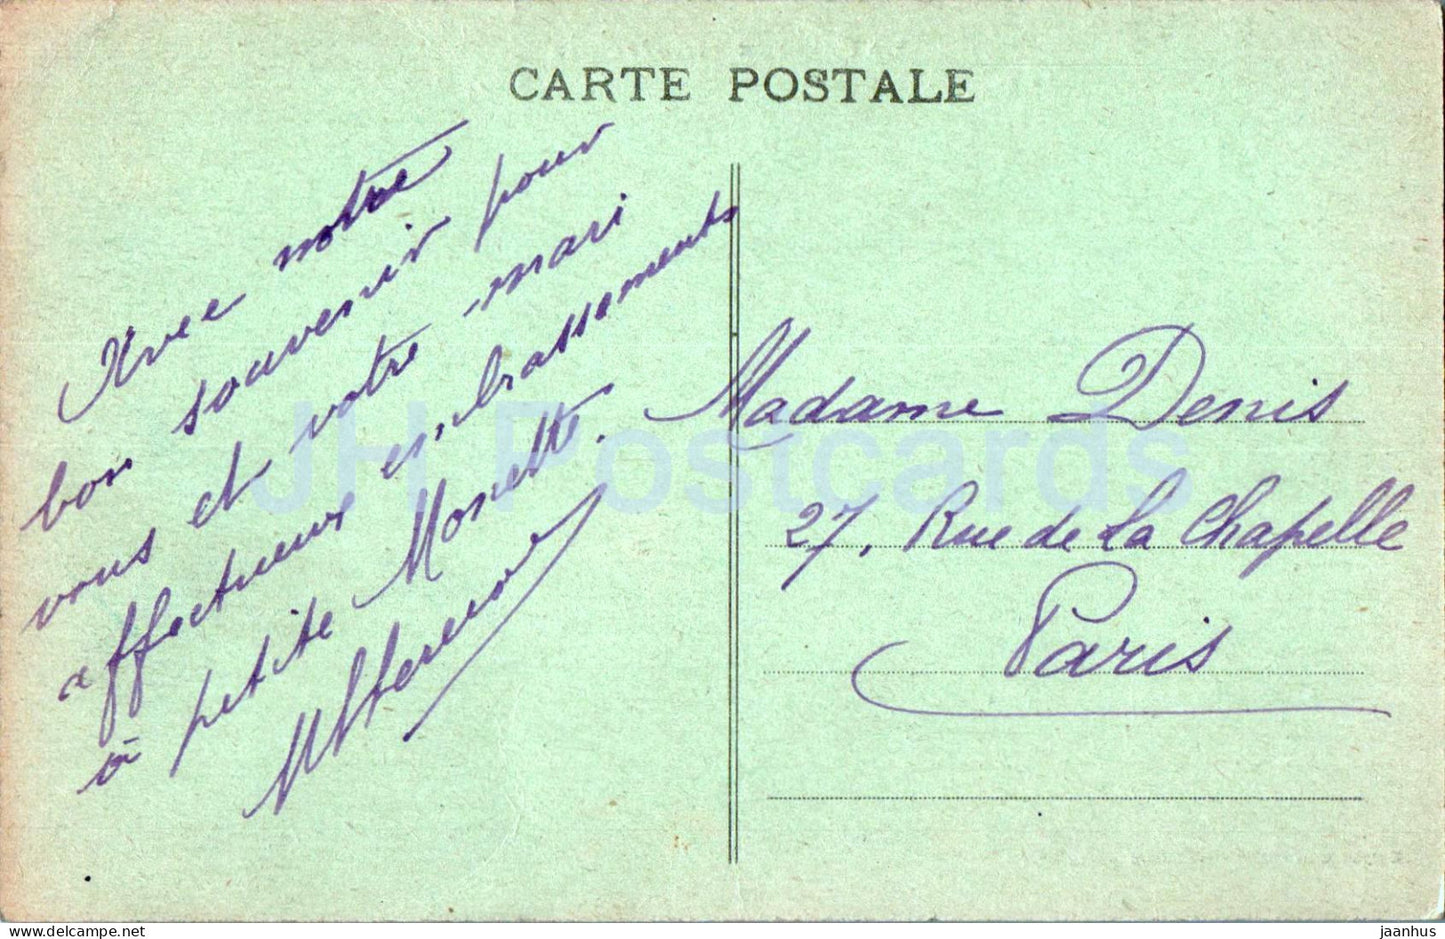 La Vallee du Falgoux, Preis des Grand Tournant du Puy Mary – Le Falgoux Pittoresque – alte Postkarte – Frankreich – gebraucht